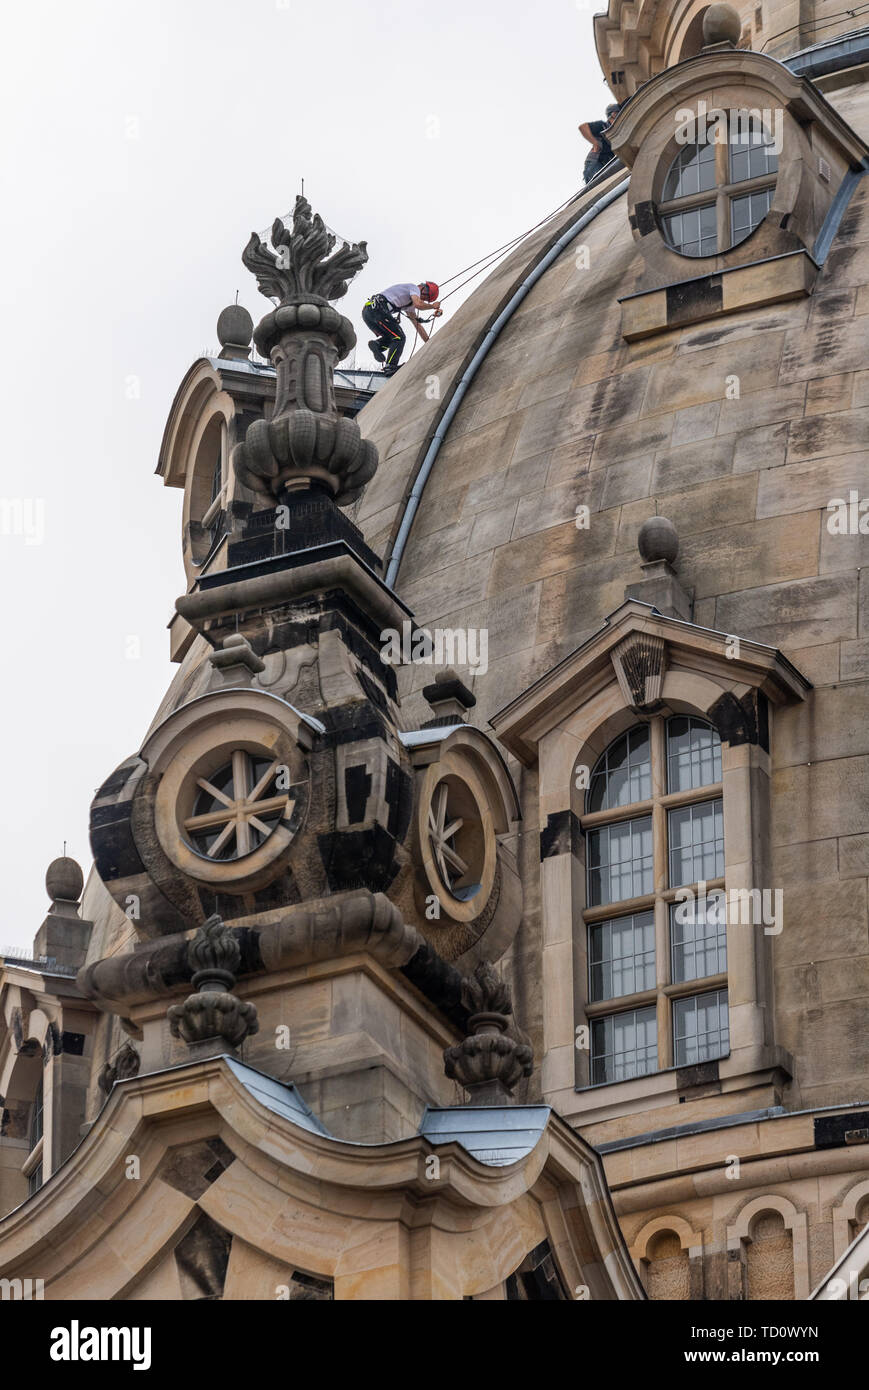 Dresde, Allemagne. 11 Juin, 2019. Un technicien accès sur corde grimpe sur la coupole de la Frauenkirche à renouveler pour la soirée des feux l'allumage du dôme de pierre. Travaux d'entretien et de remplacement doit être effectuée sur un total de 40 appareils sur la lanterne, l'arbre du petit dome bâtiments et l'arrière de la tourelle d'escalier. Le travail est nécessaire parce que la lumière de l'éclairage précédent ne reflète plus suffisamment de l'obscurcissement de la pierre. Crédit : Robert Michael/dpa-Zentralbild/dpa/Alamy Live News Banque D'Images